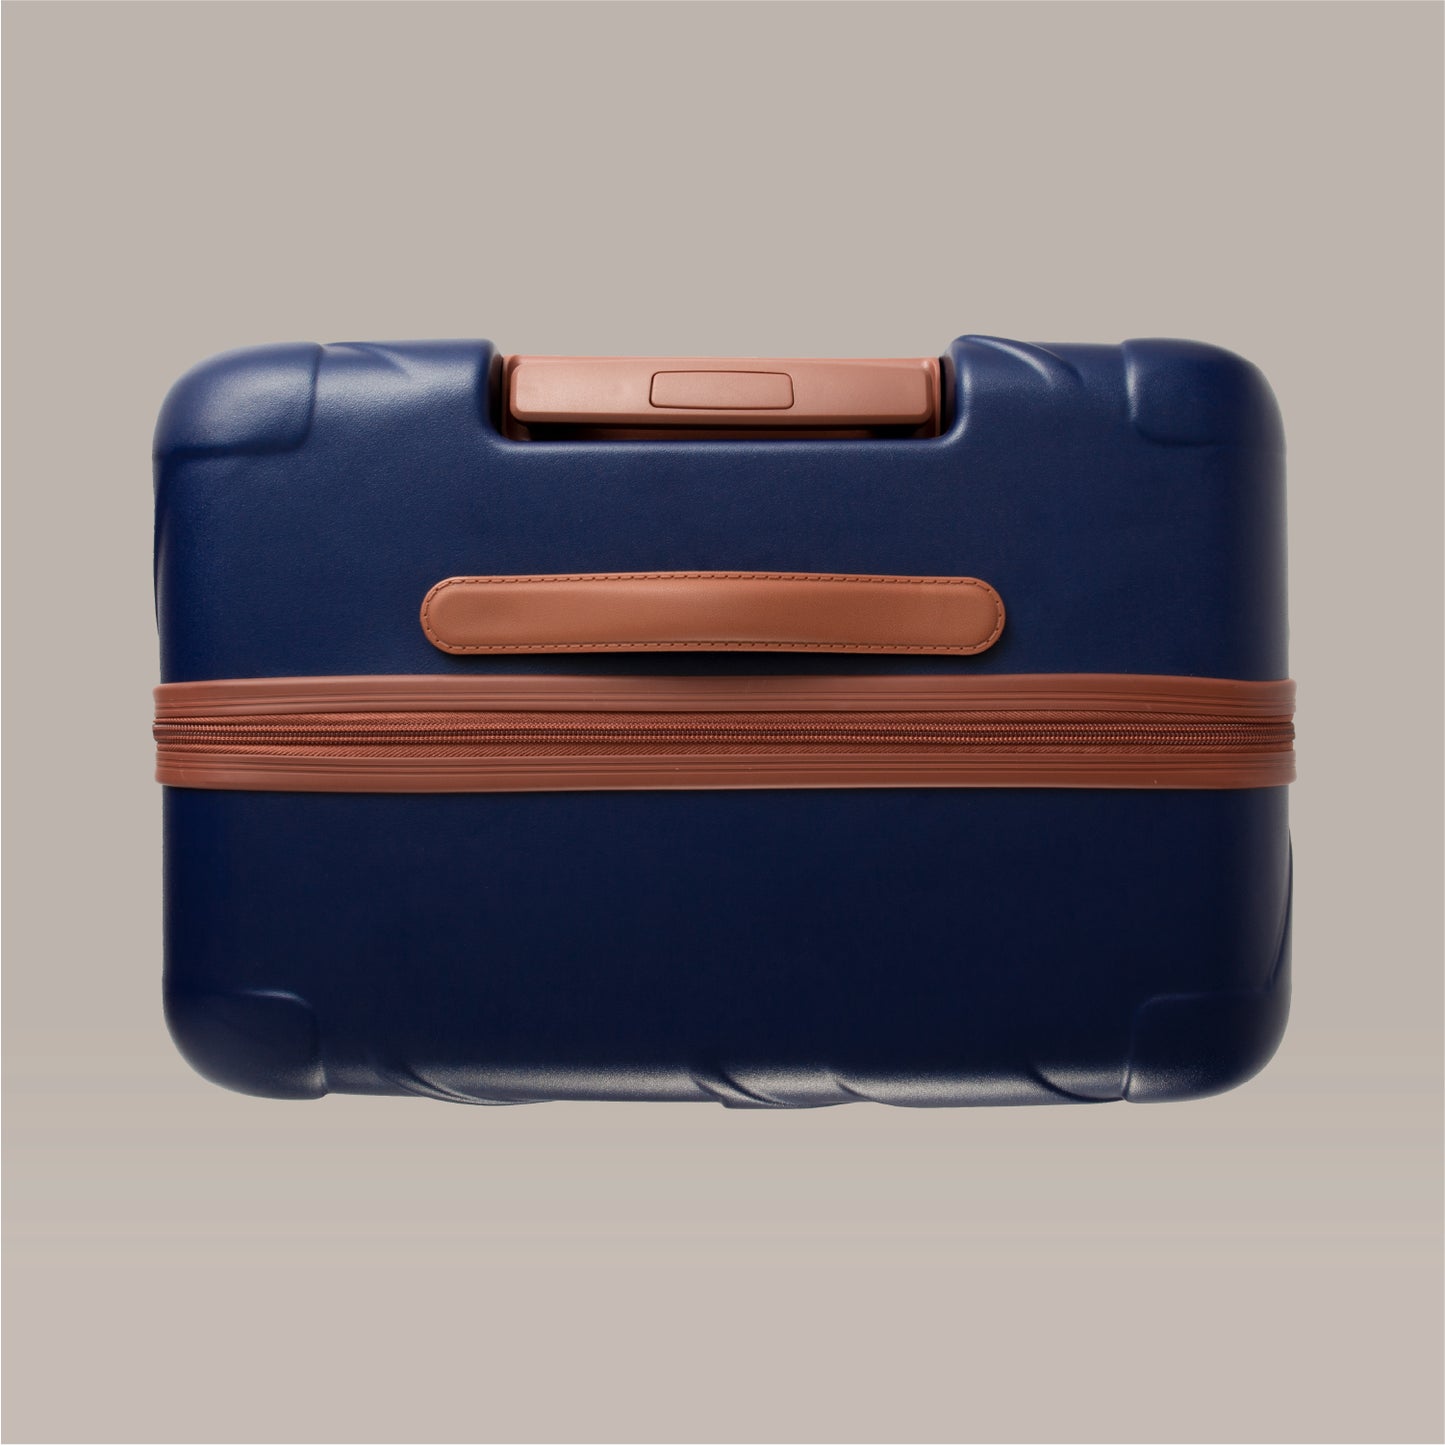 PIANOⅡ スーツケース ネイビー Lサイズ